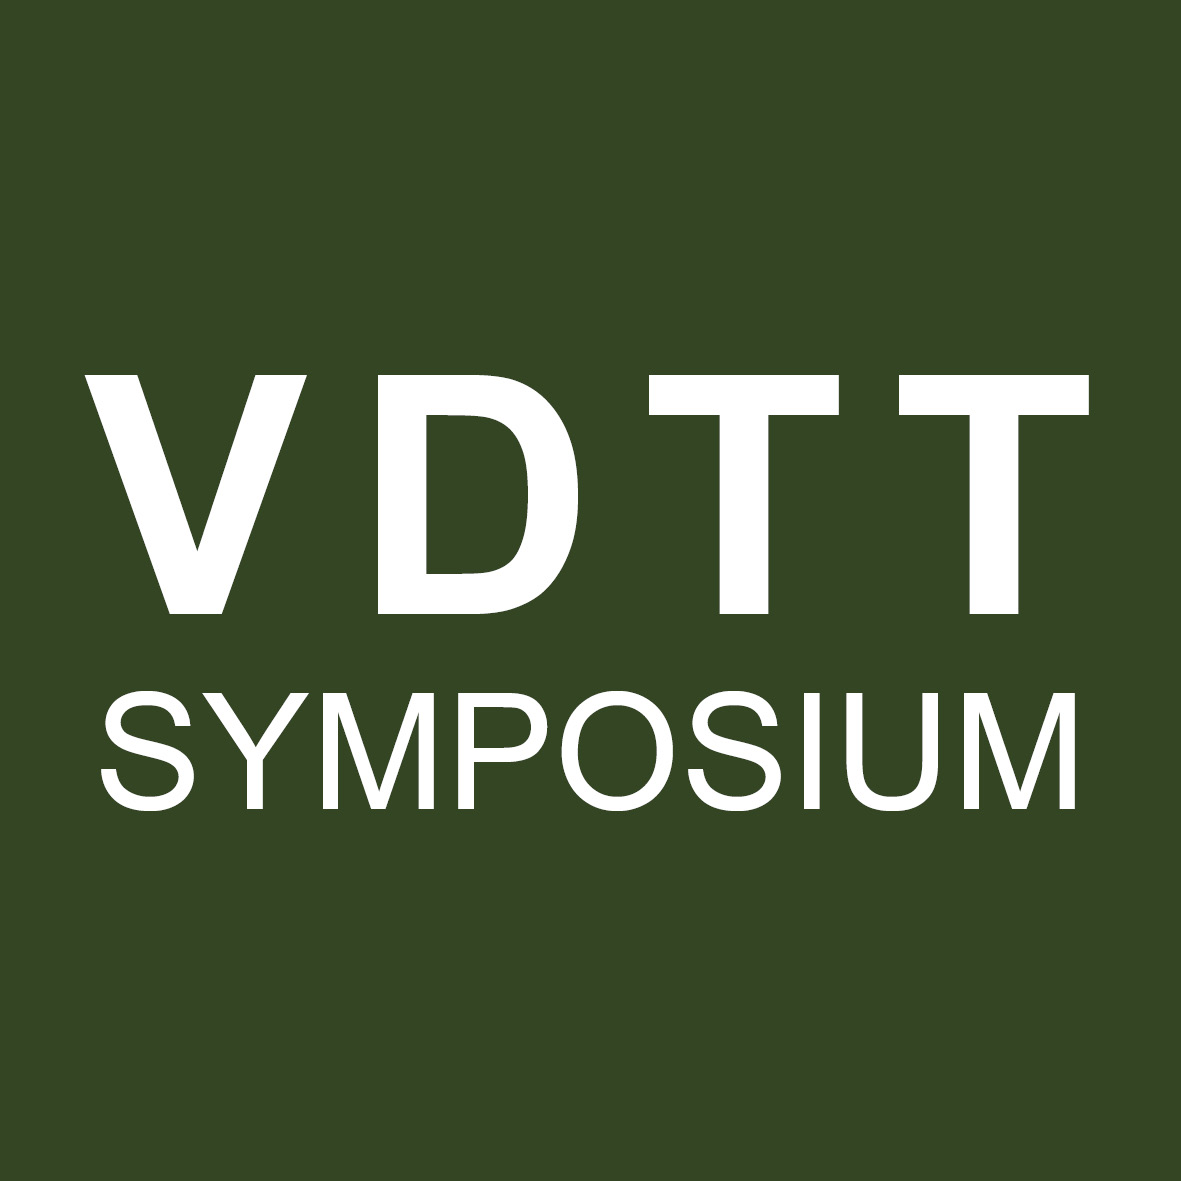 VDTT-Symposium 2022 - Kategorie B*